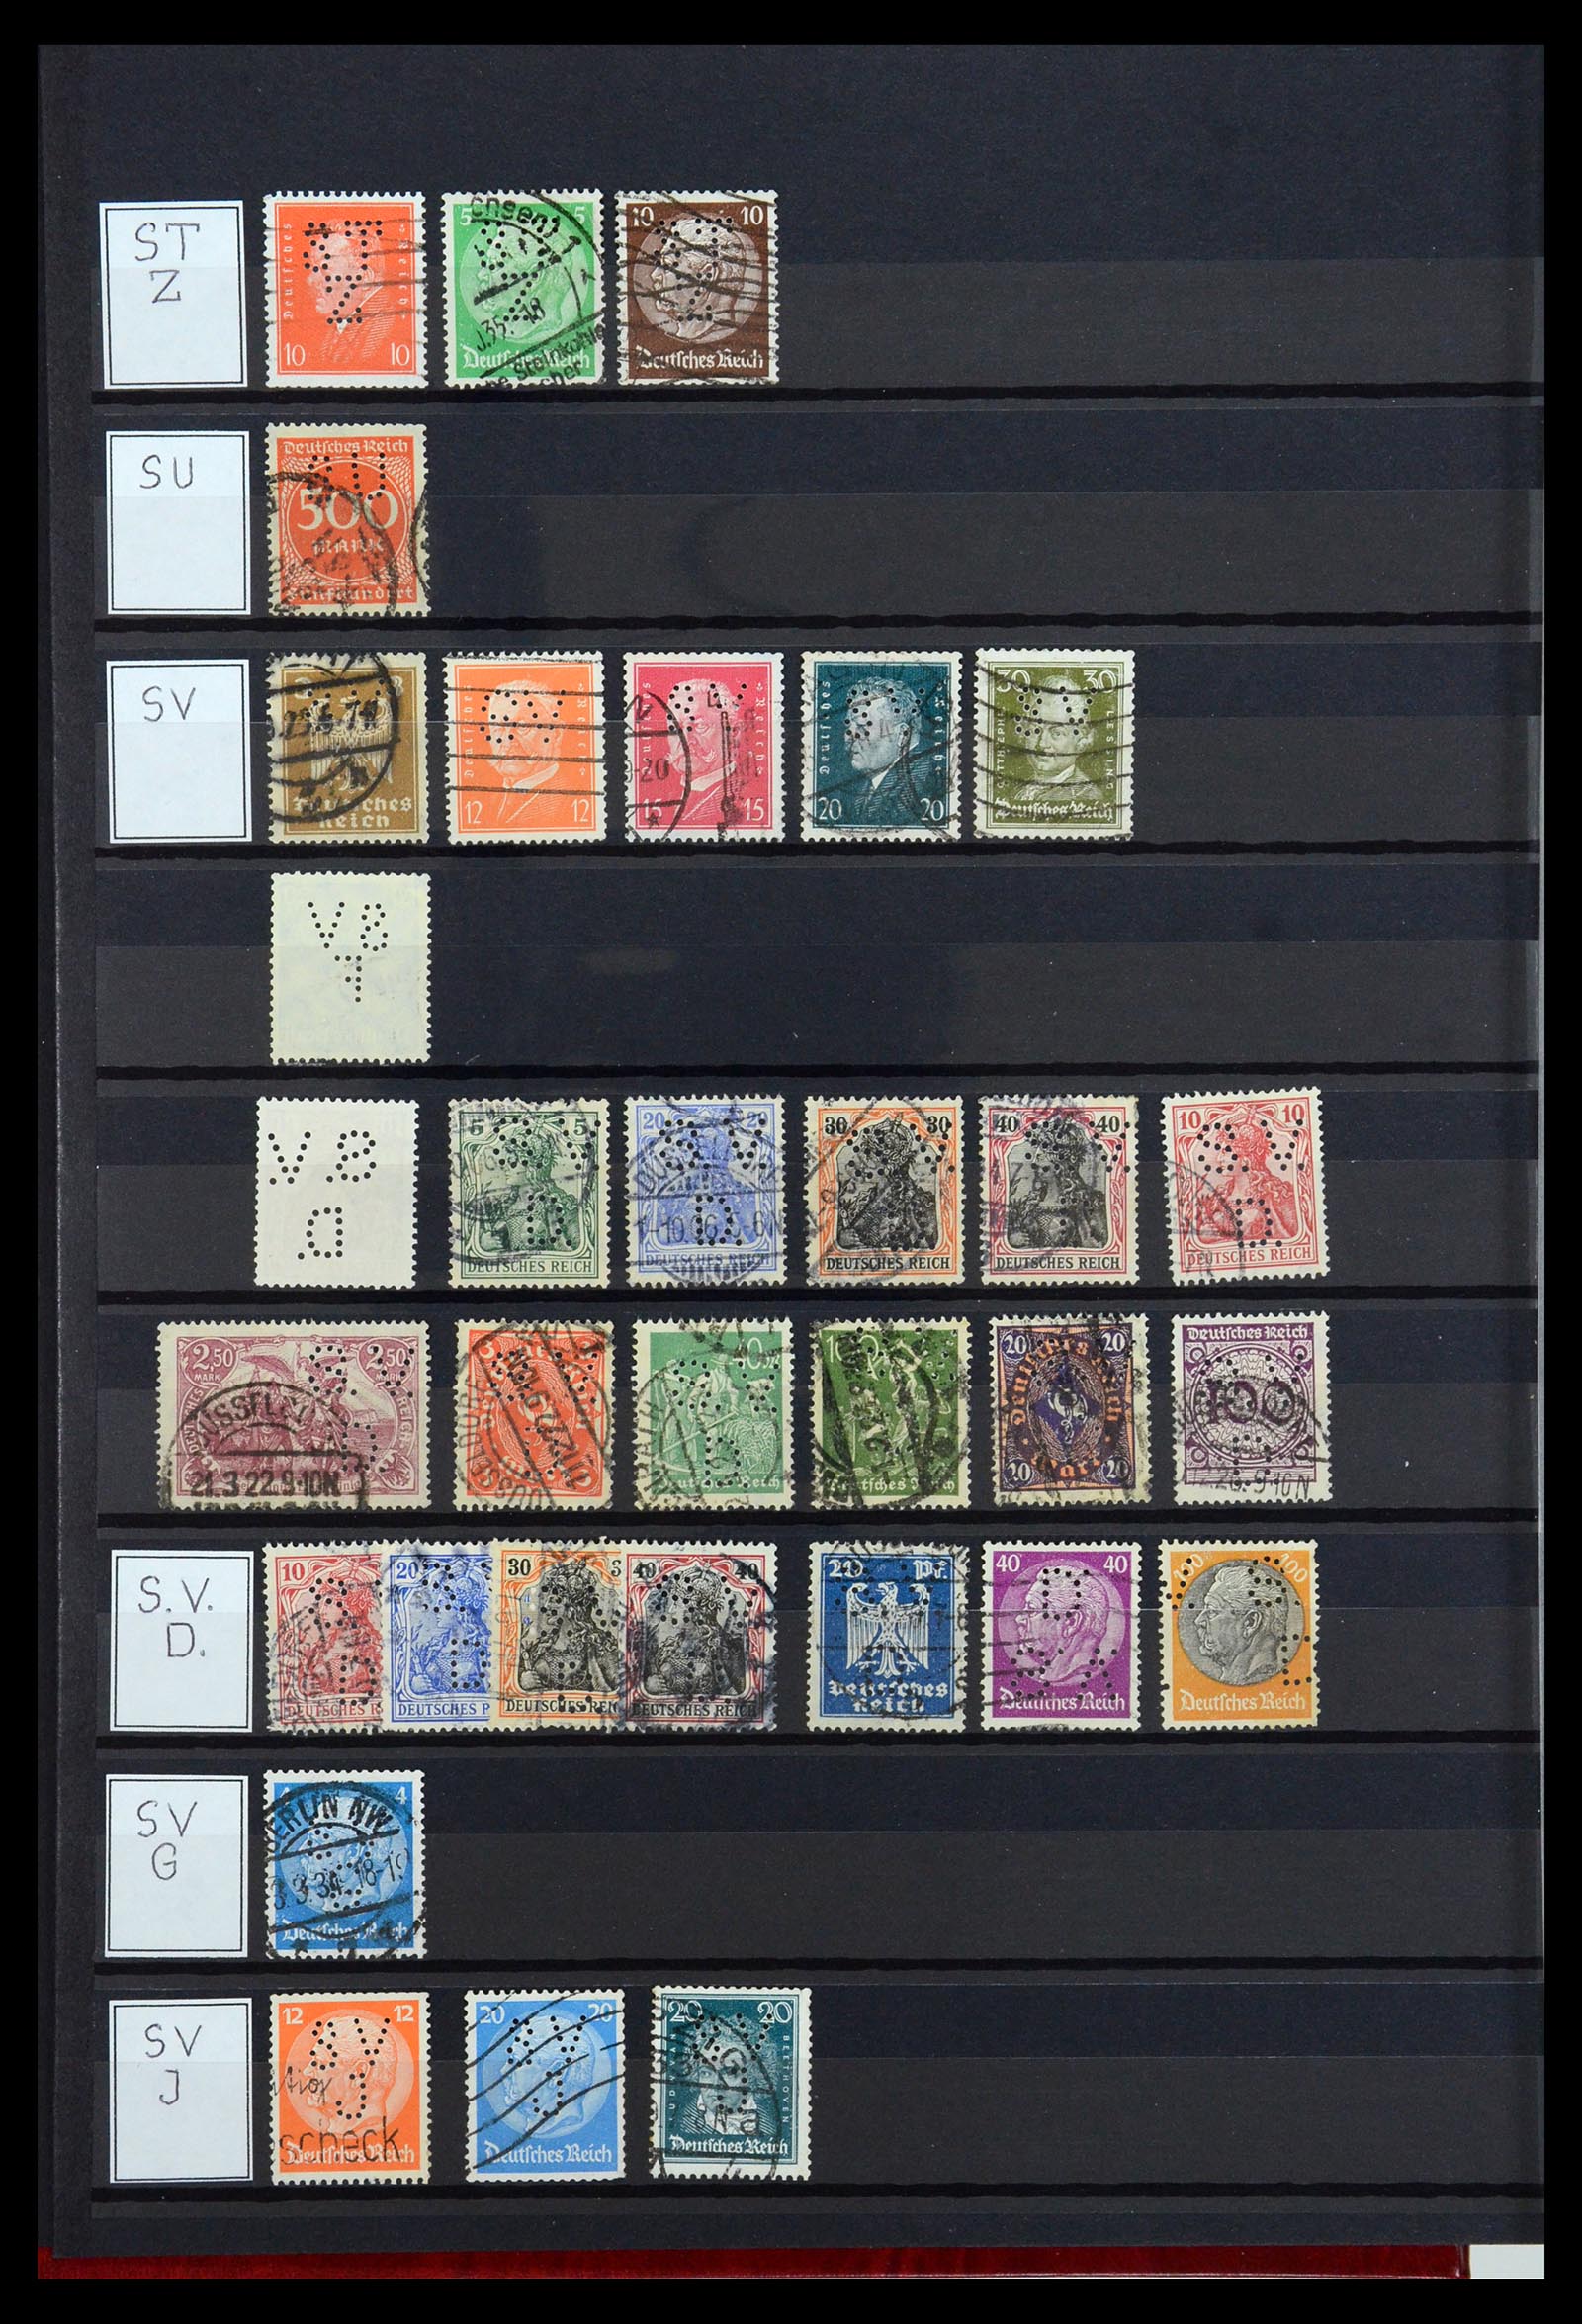 36405 301 - Stamp collection 36405 German Reich perfins 1880-1945.